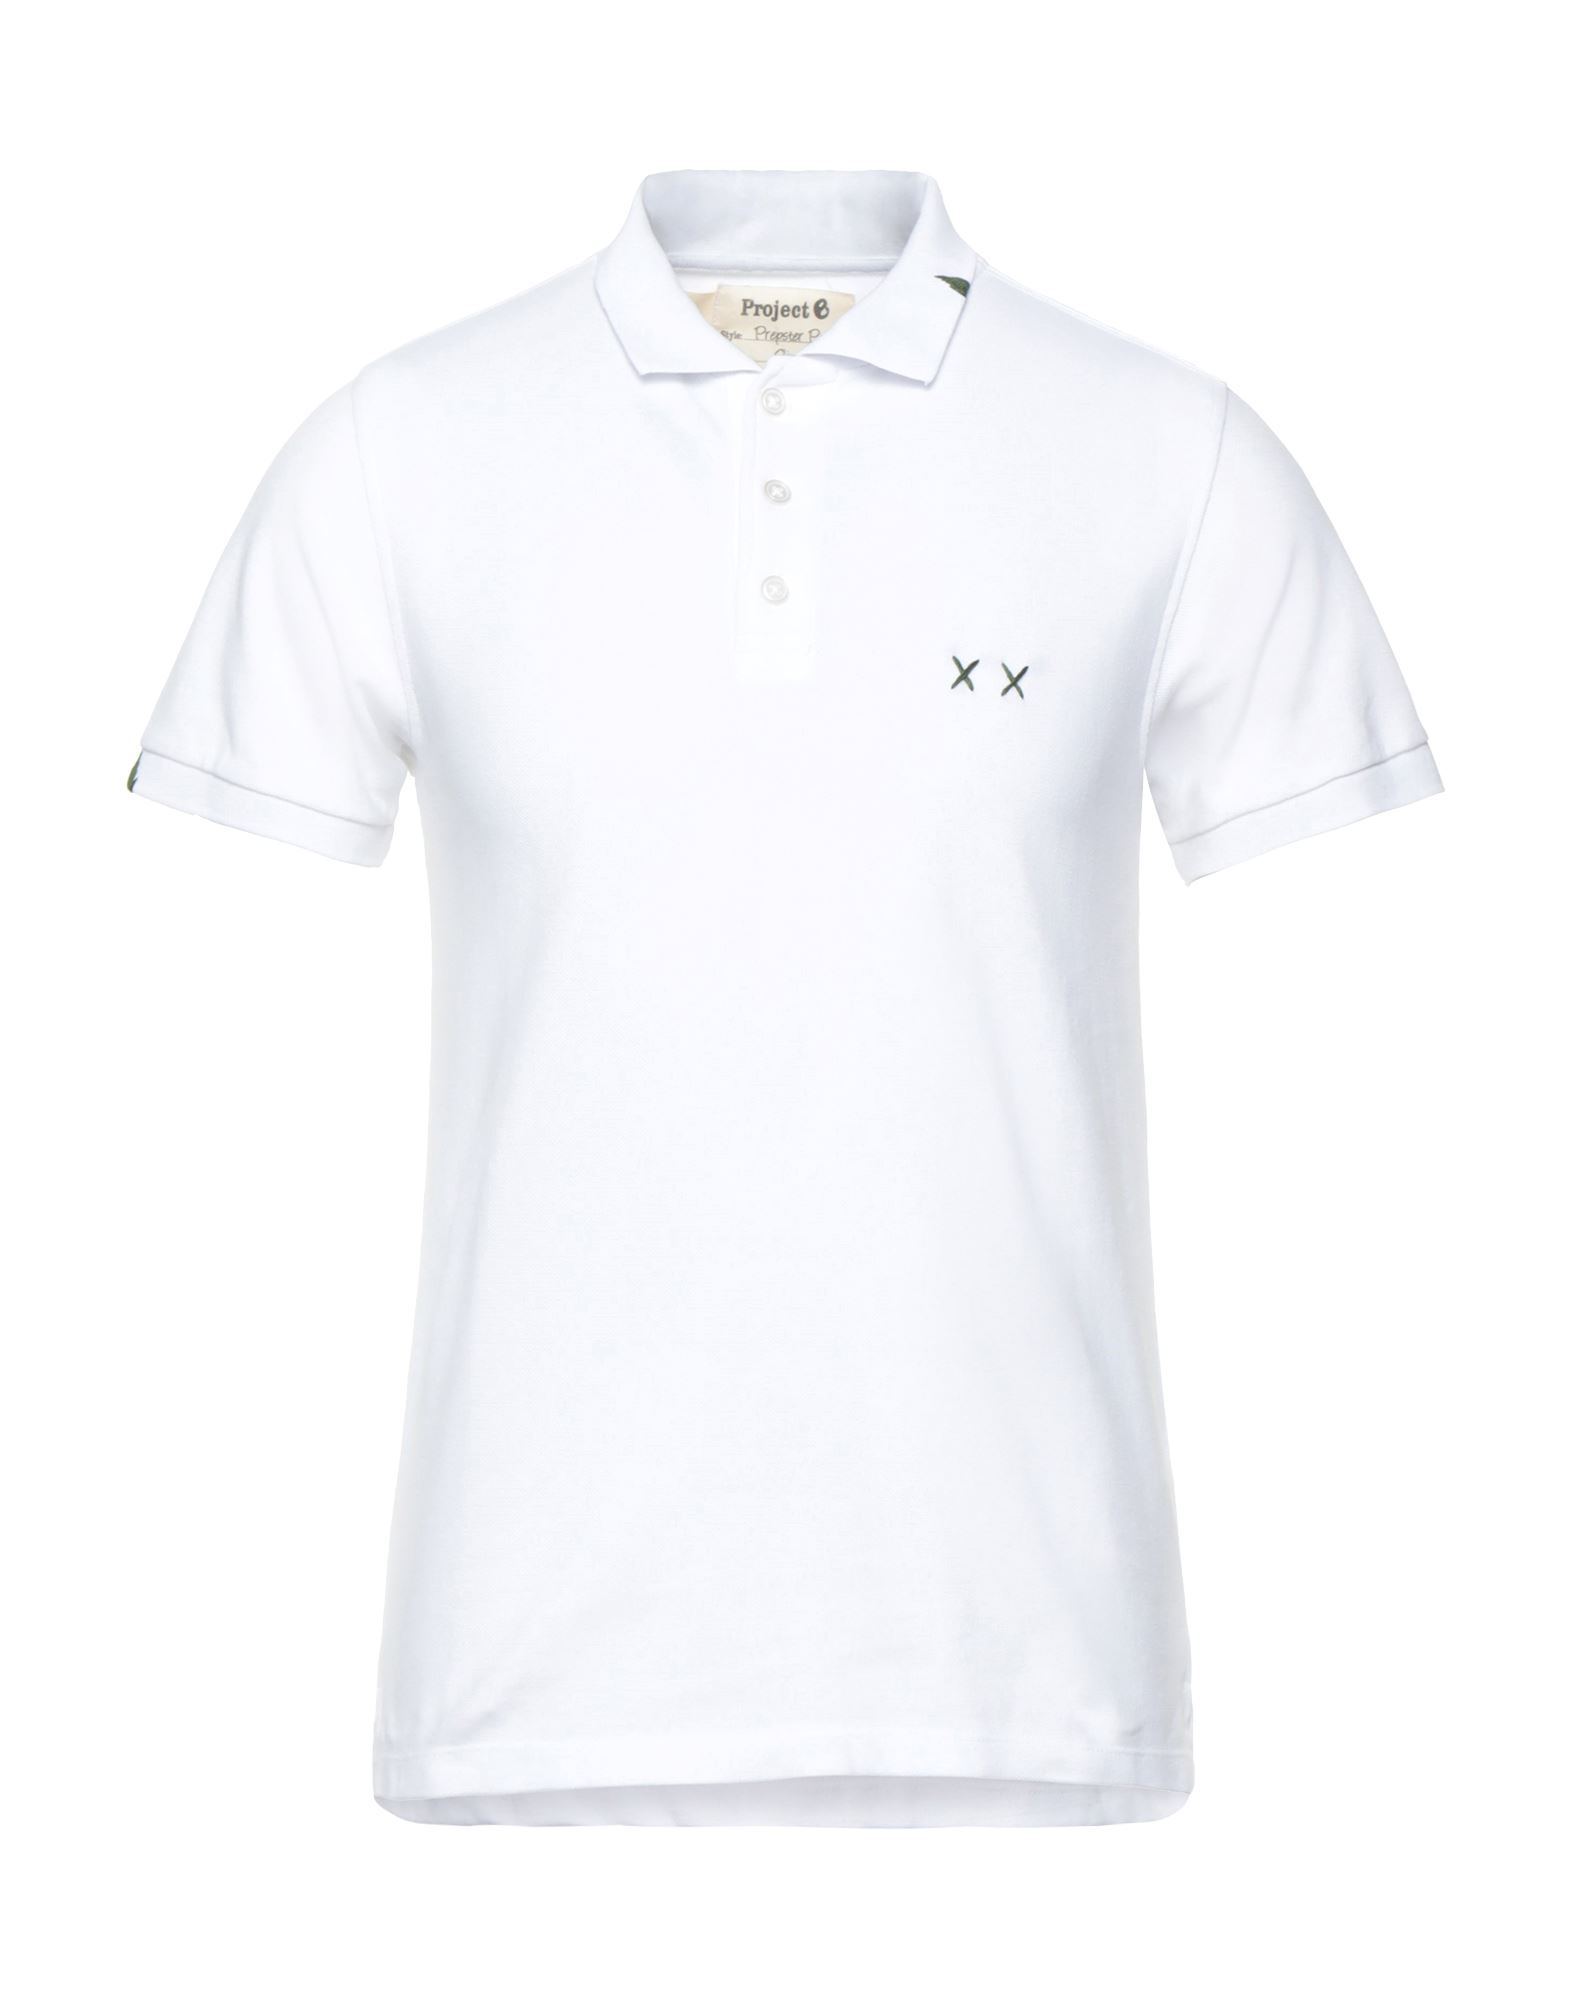 Project E Man Polo Shirt White Size Xl Cotton